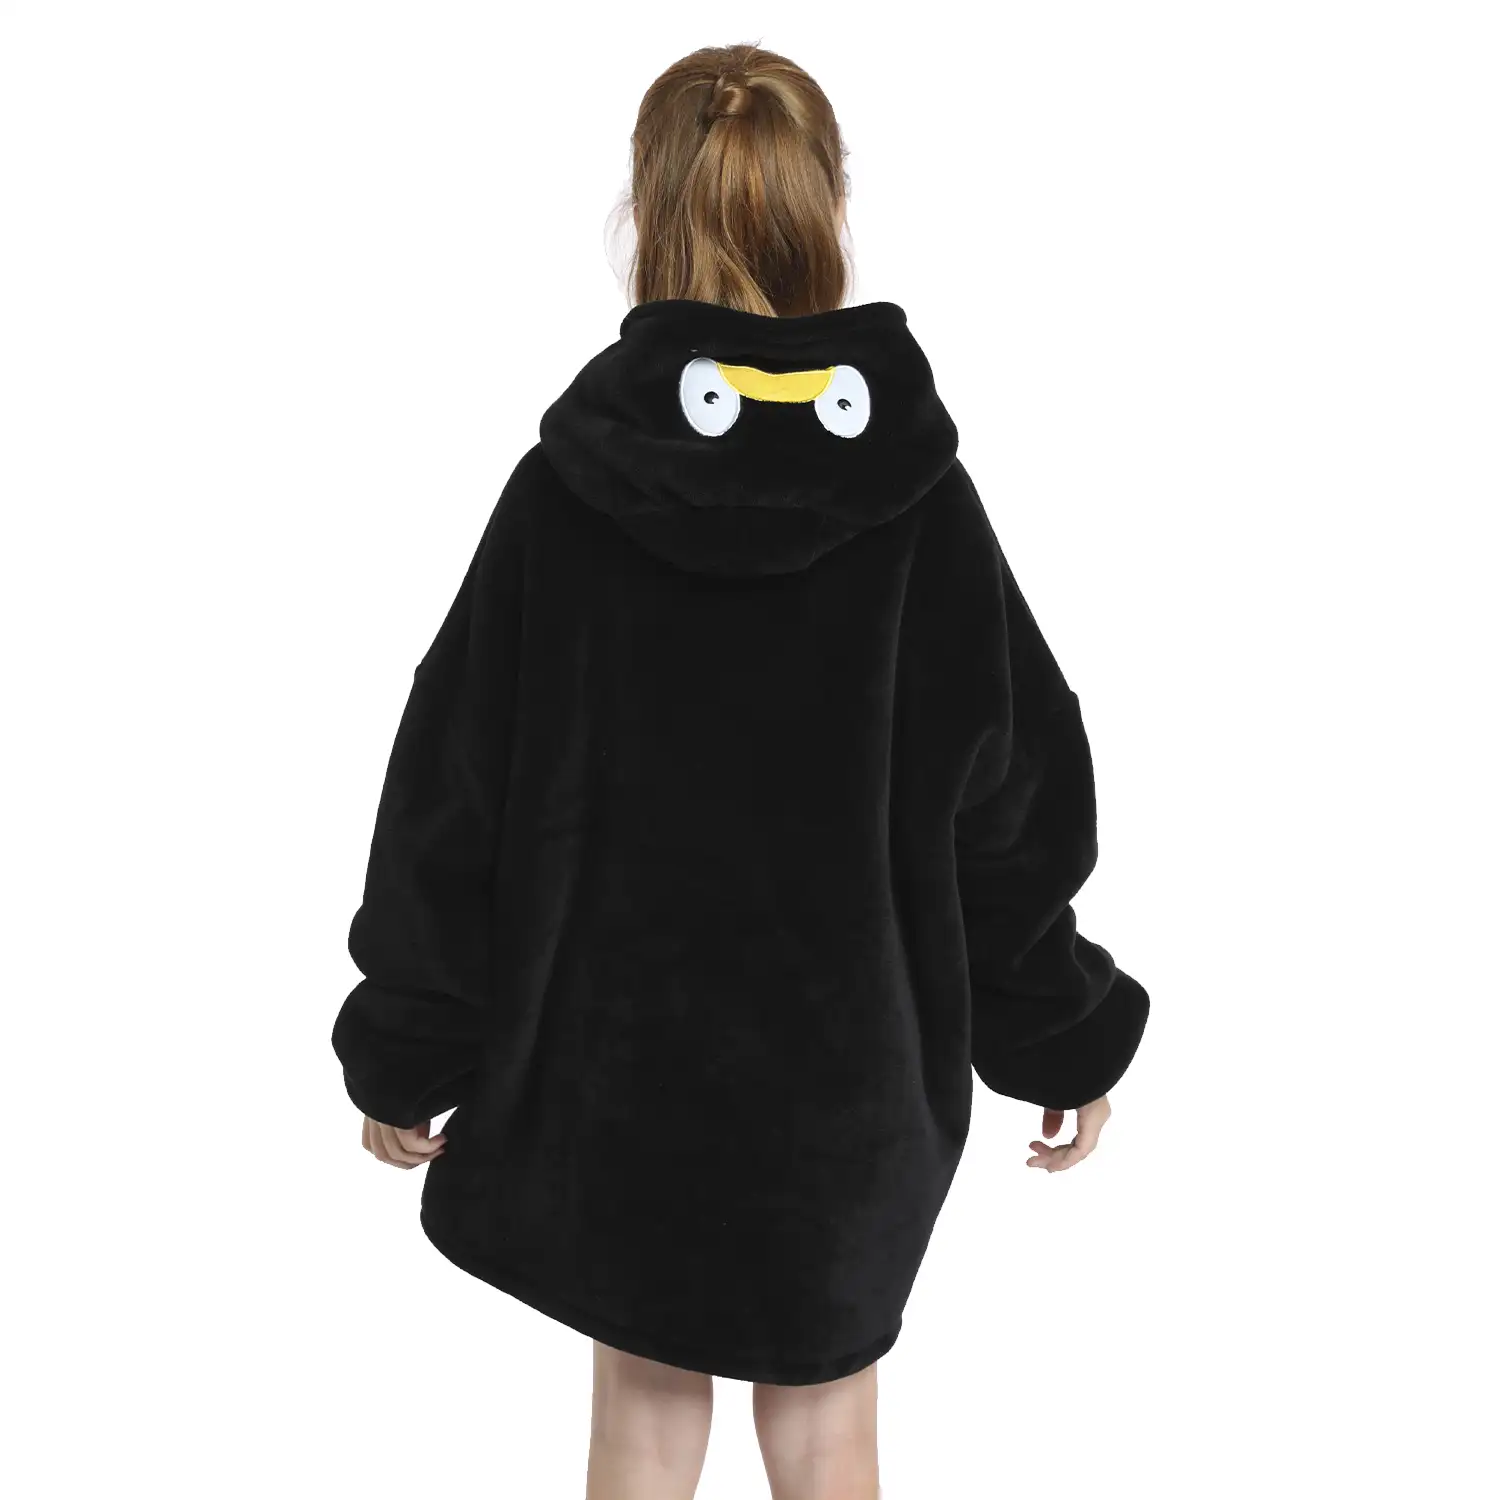 Bata infantil estilo sudadera y manta de felpa extrasuave. Bolsillos frontales. Diseño Pingüino